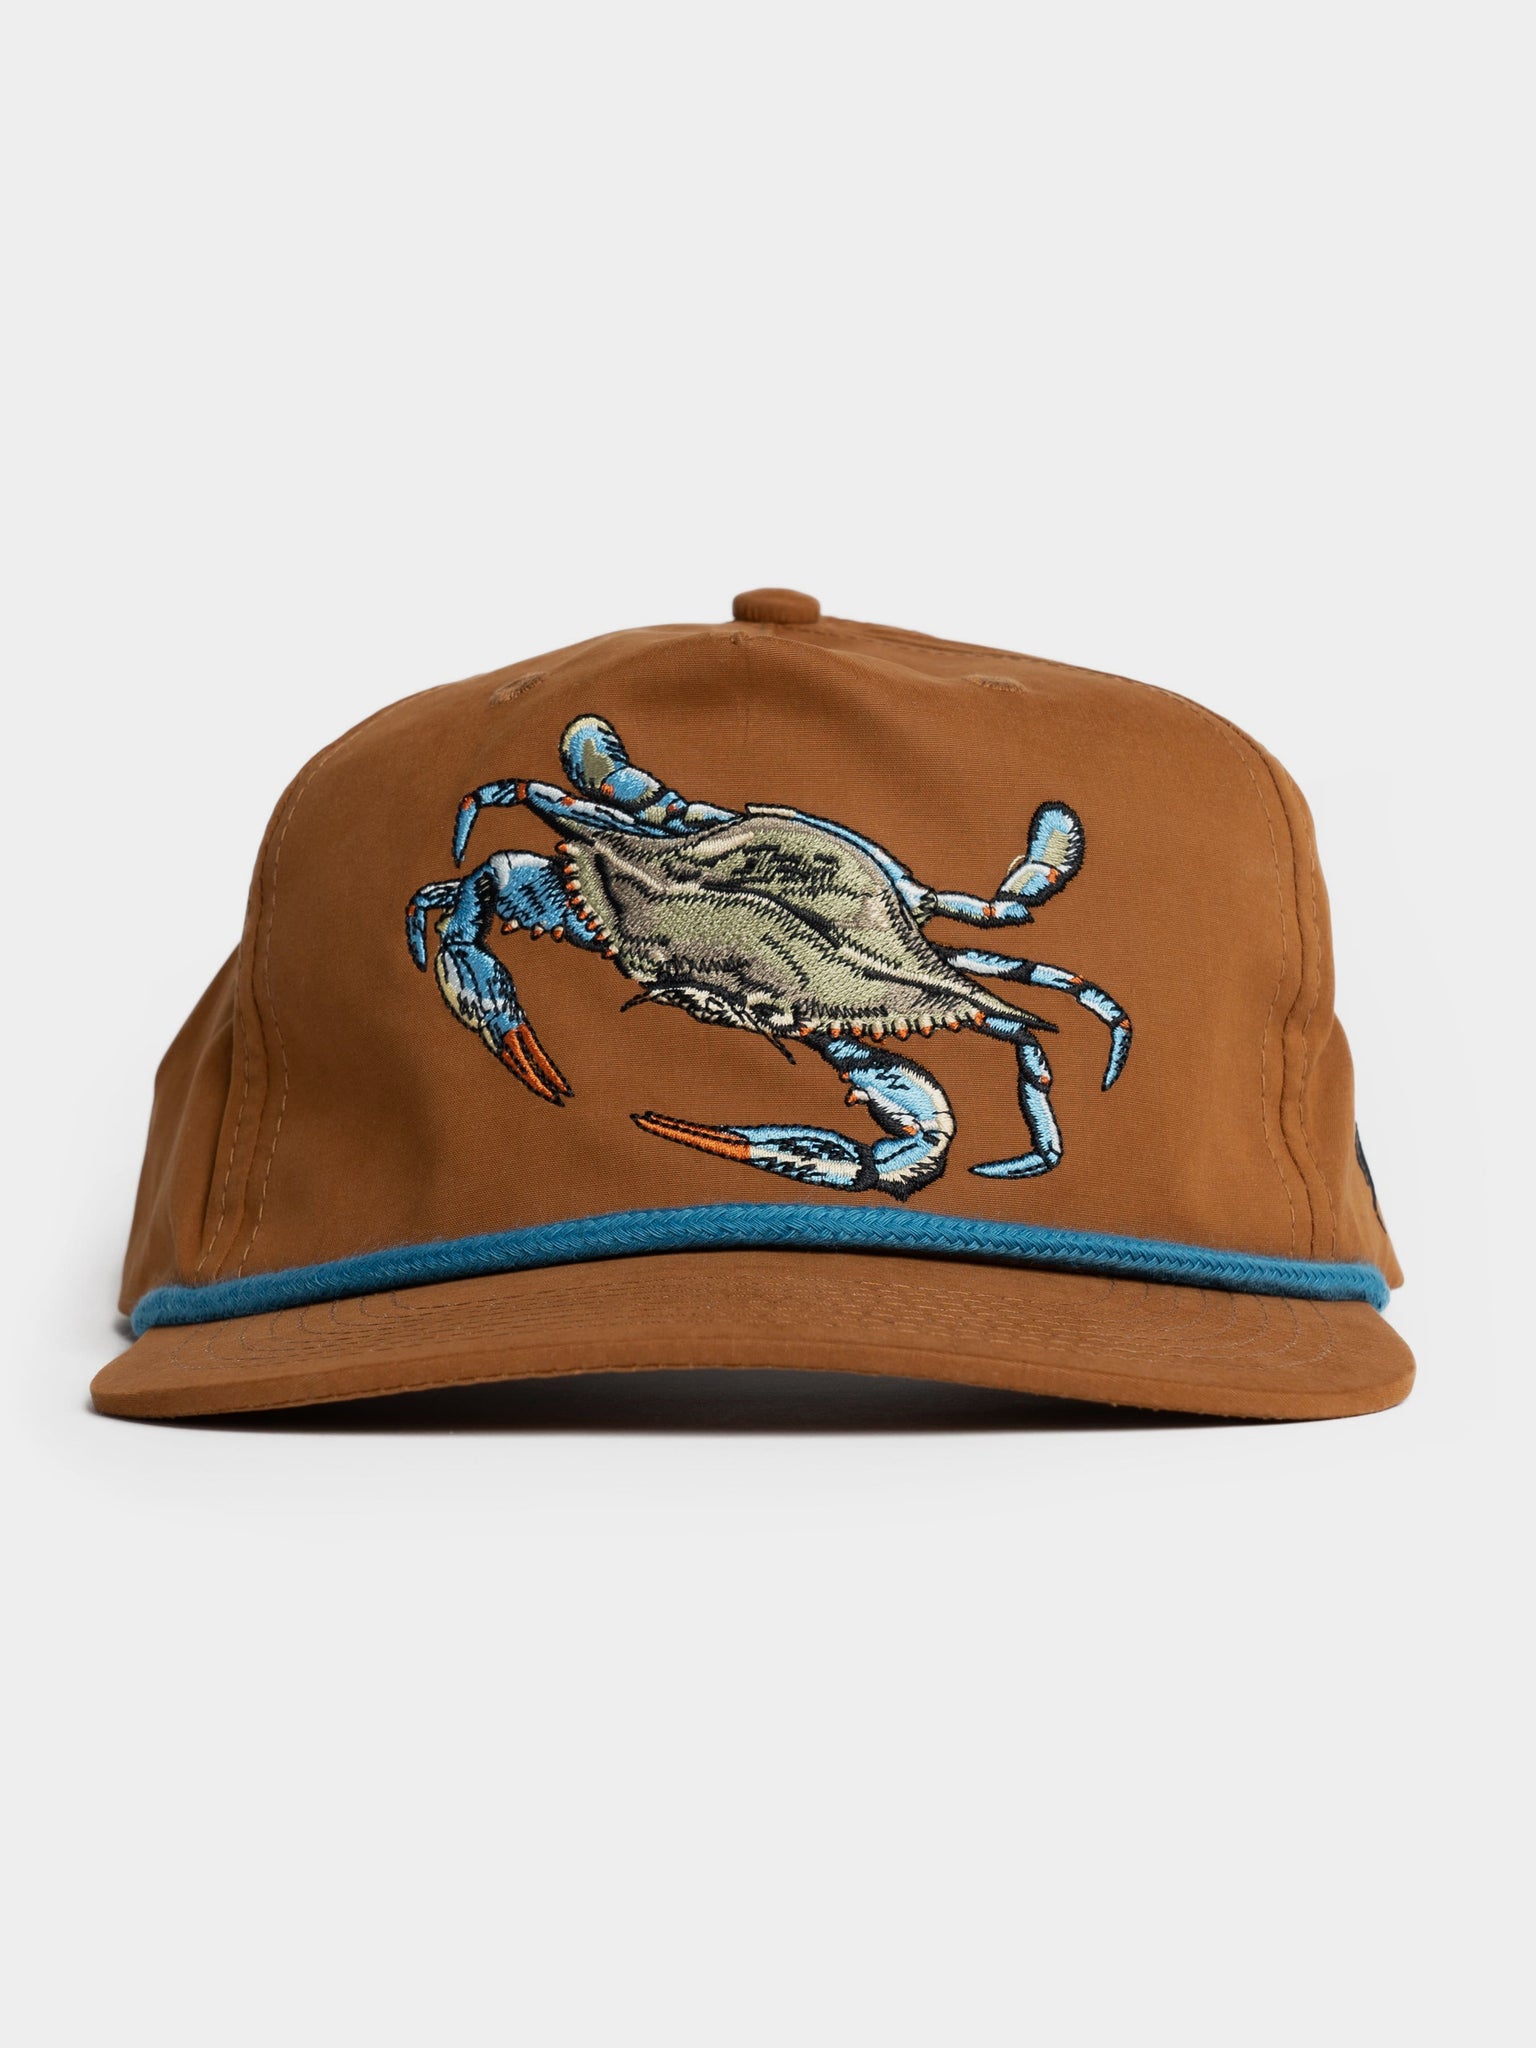 Blue Crab Hat - Pintail Brown